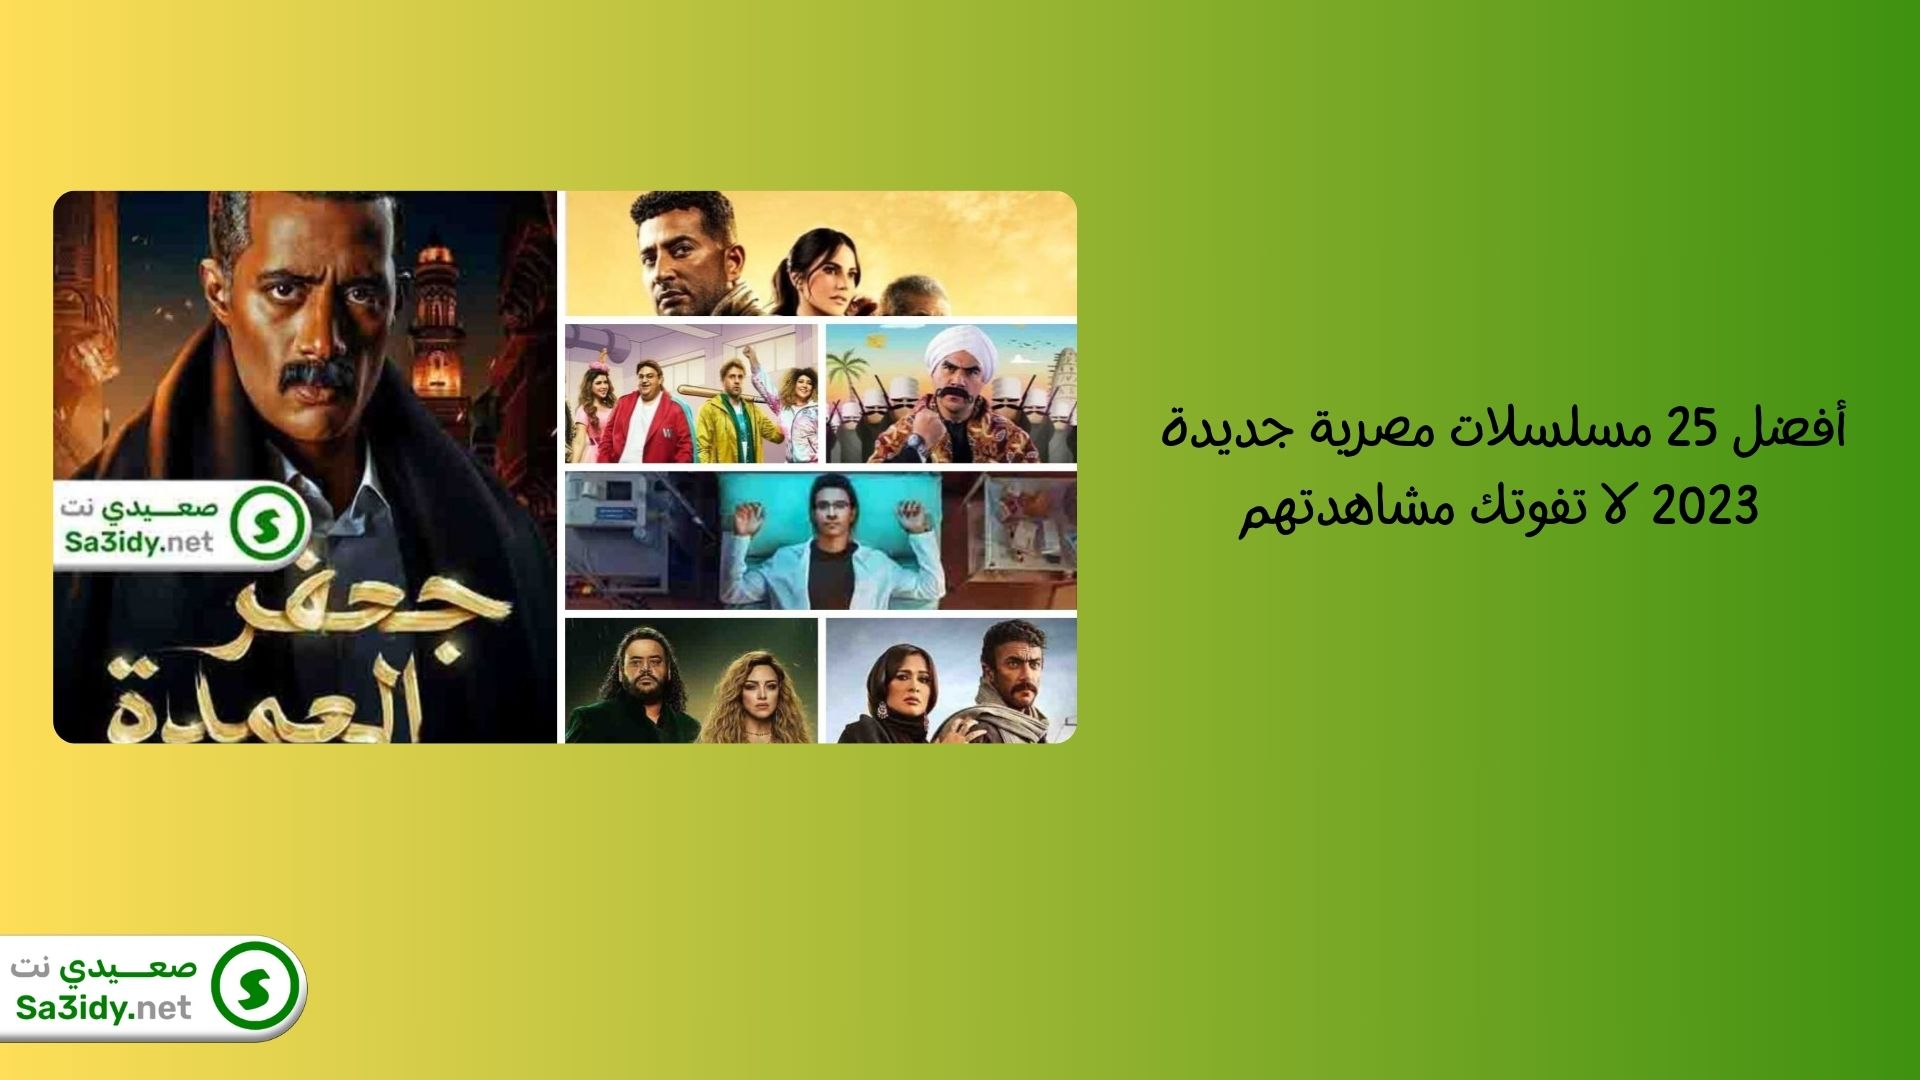 أفضل 25 مسلسلات مصرية جديدة 2023 لا تفوتك مشاهدتهم